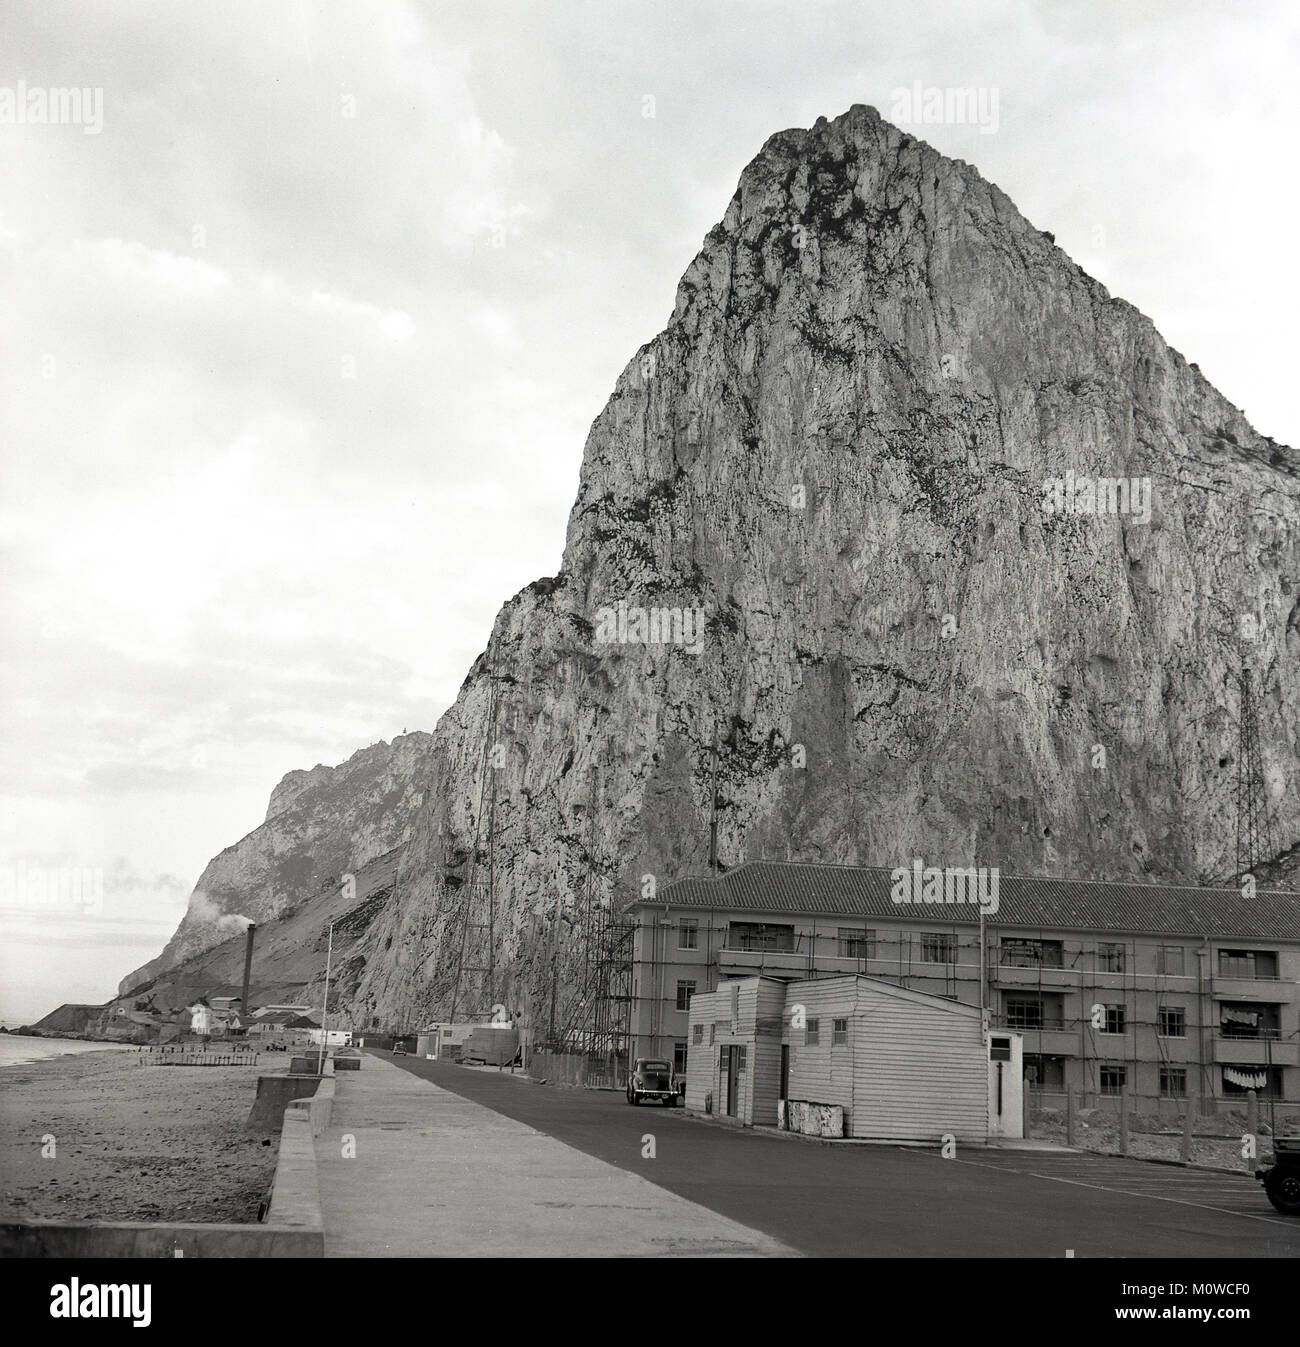 Degli anni Cinquanta, foto storiche che mostra il famoso 'Rock di Gibilterra", un 426m-calcare alta cresta formata nel giurassico l'età. Un promontorio sulla costa della Spagna del sud, Gibilterra è stata una British Overseas territorio fin dal 1713 quando fu ceduto dalla Spagna. Foto Stock